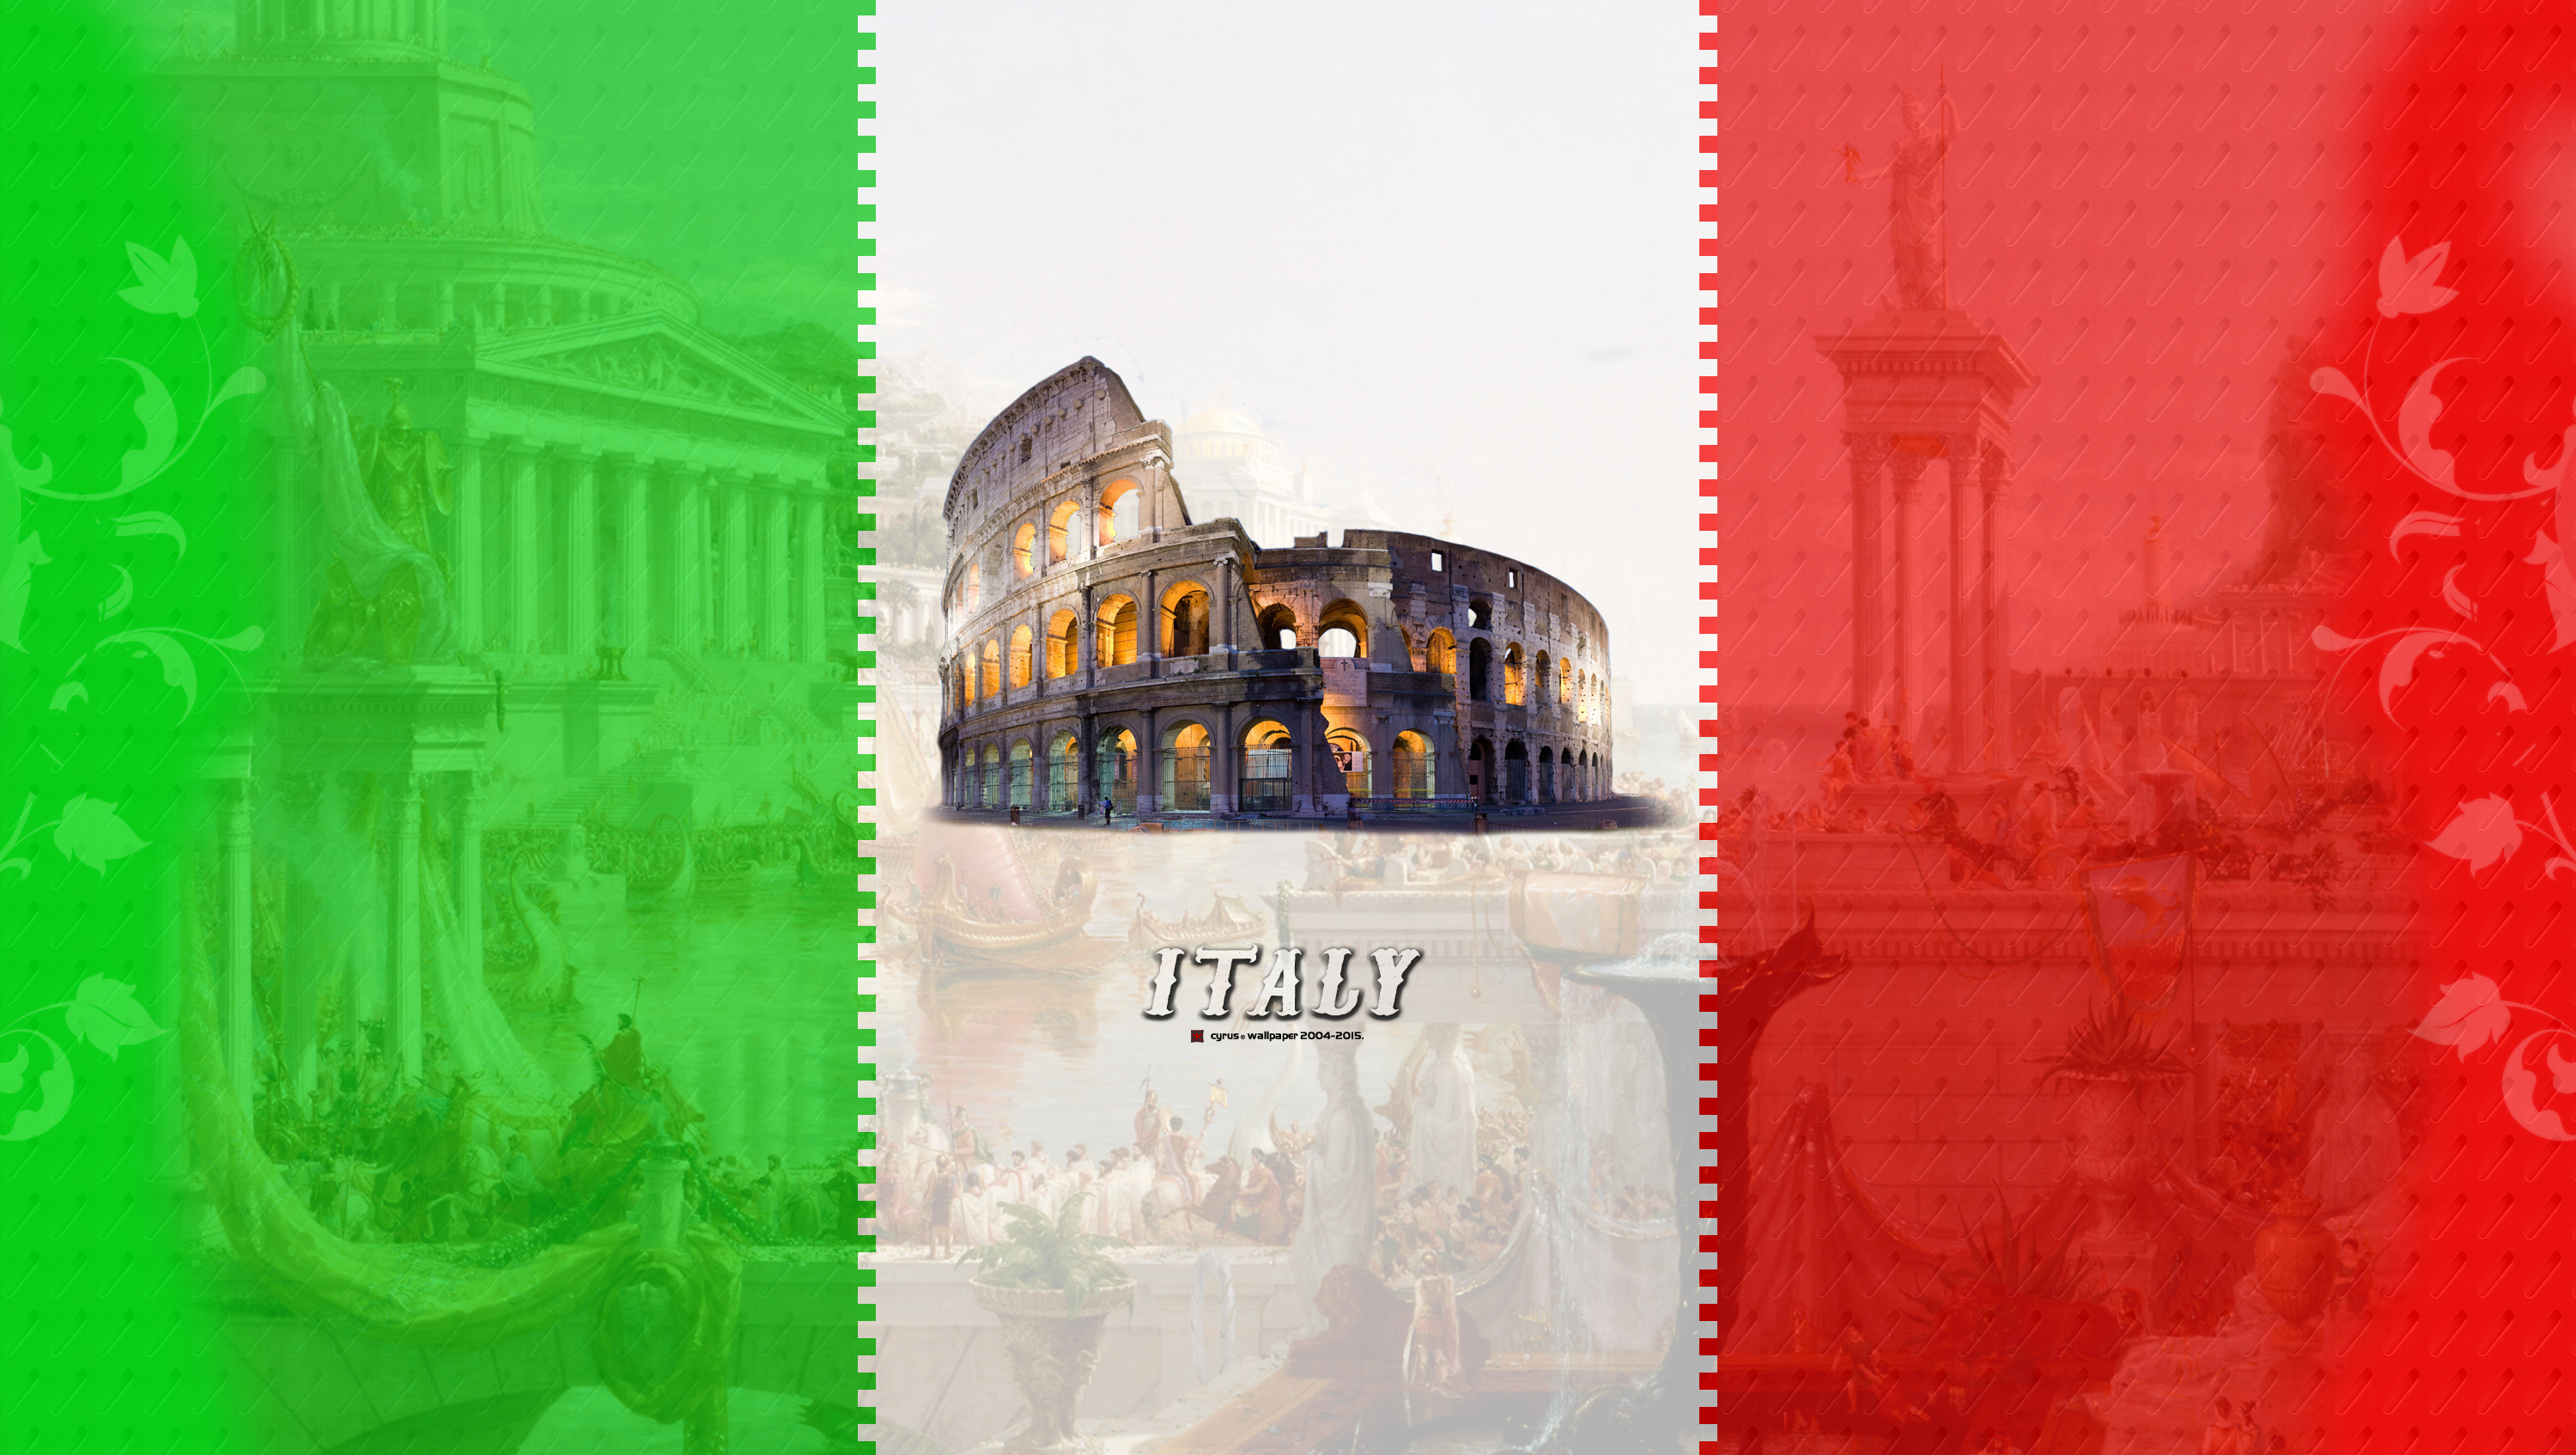 عکس از پرچم کشور ایتالیا